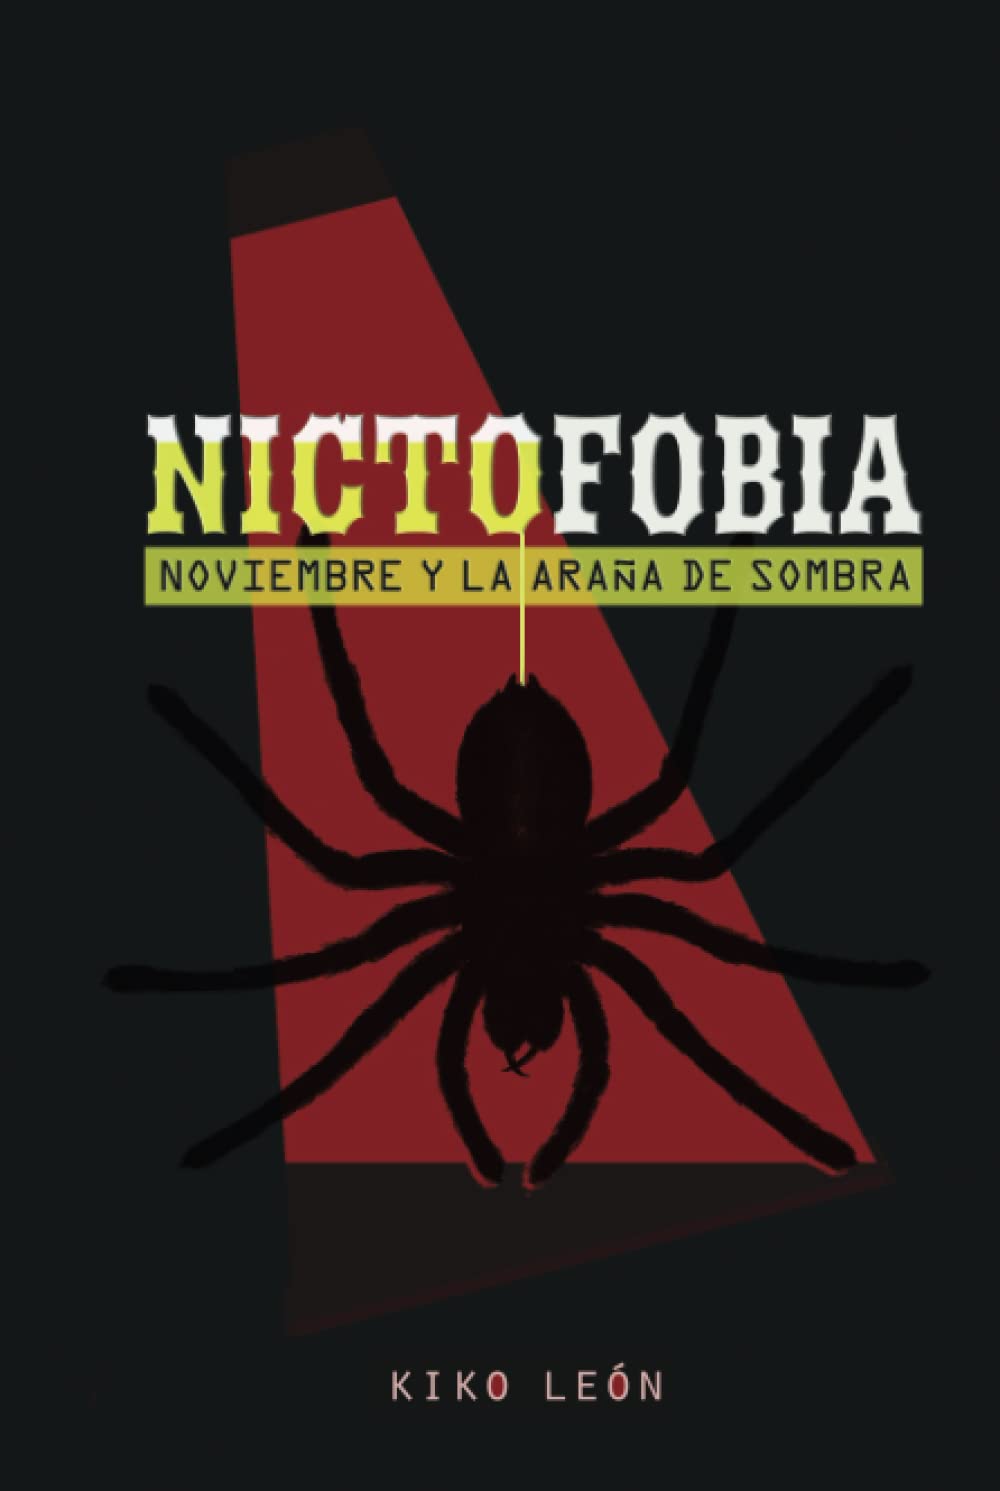 Nictofobia: Noviembre y la araña de sombra